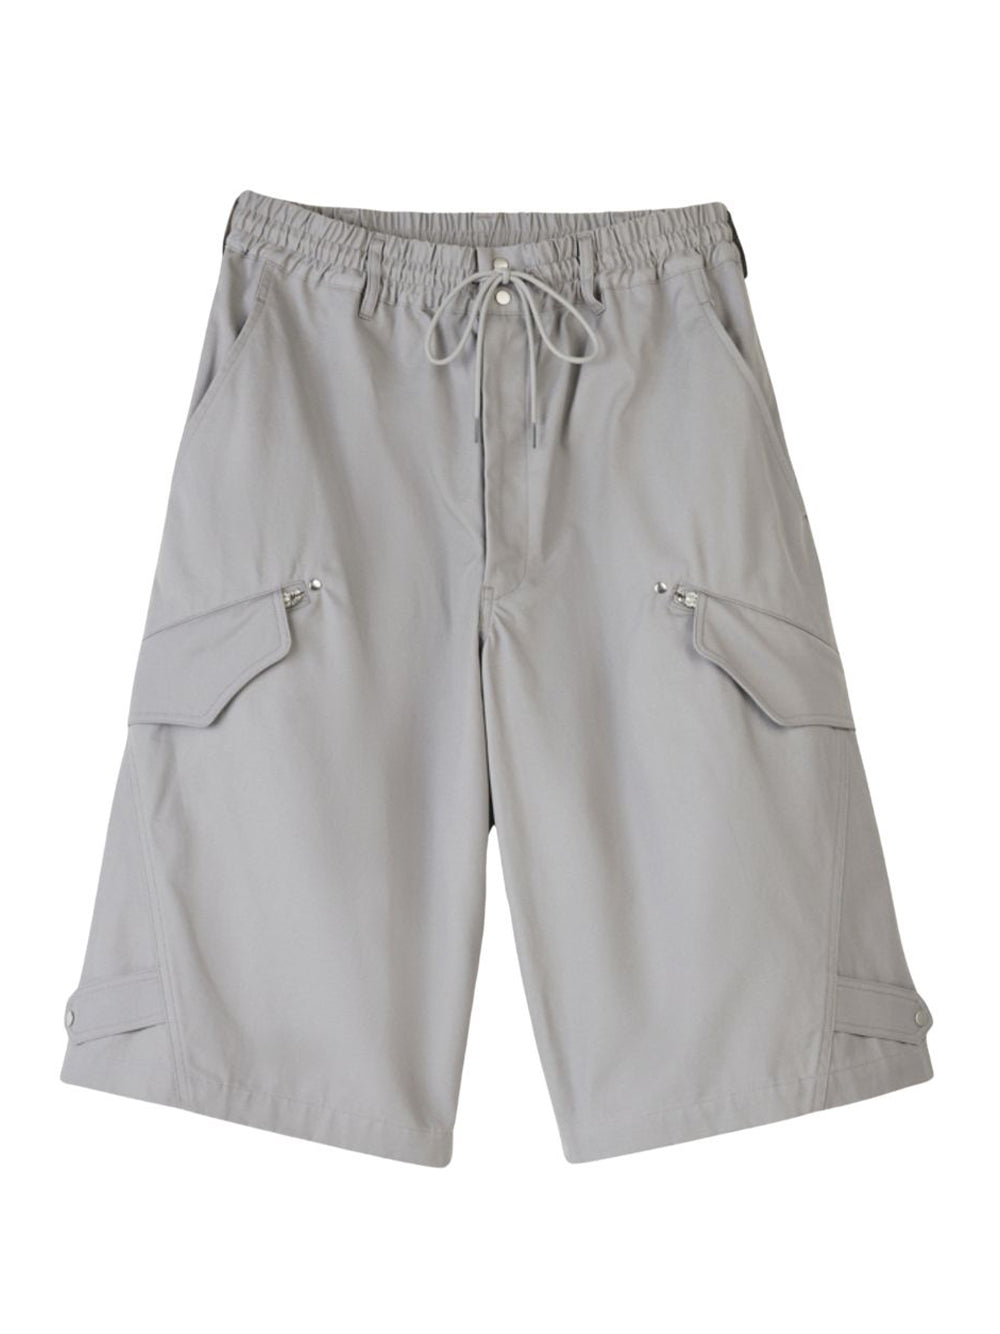 Workwear Shorts (CH Solid Grey)